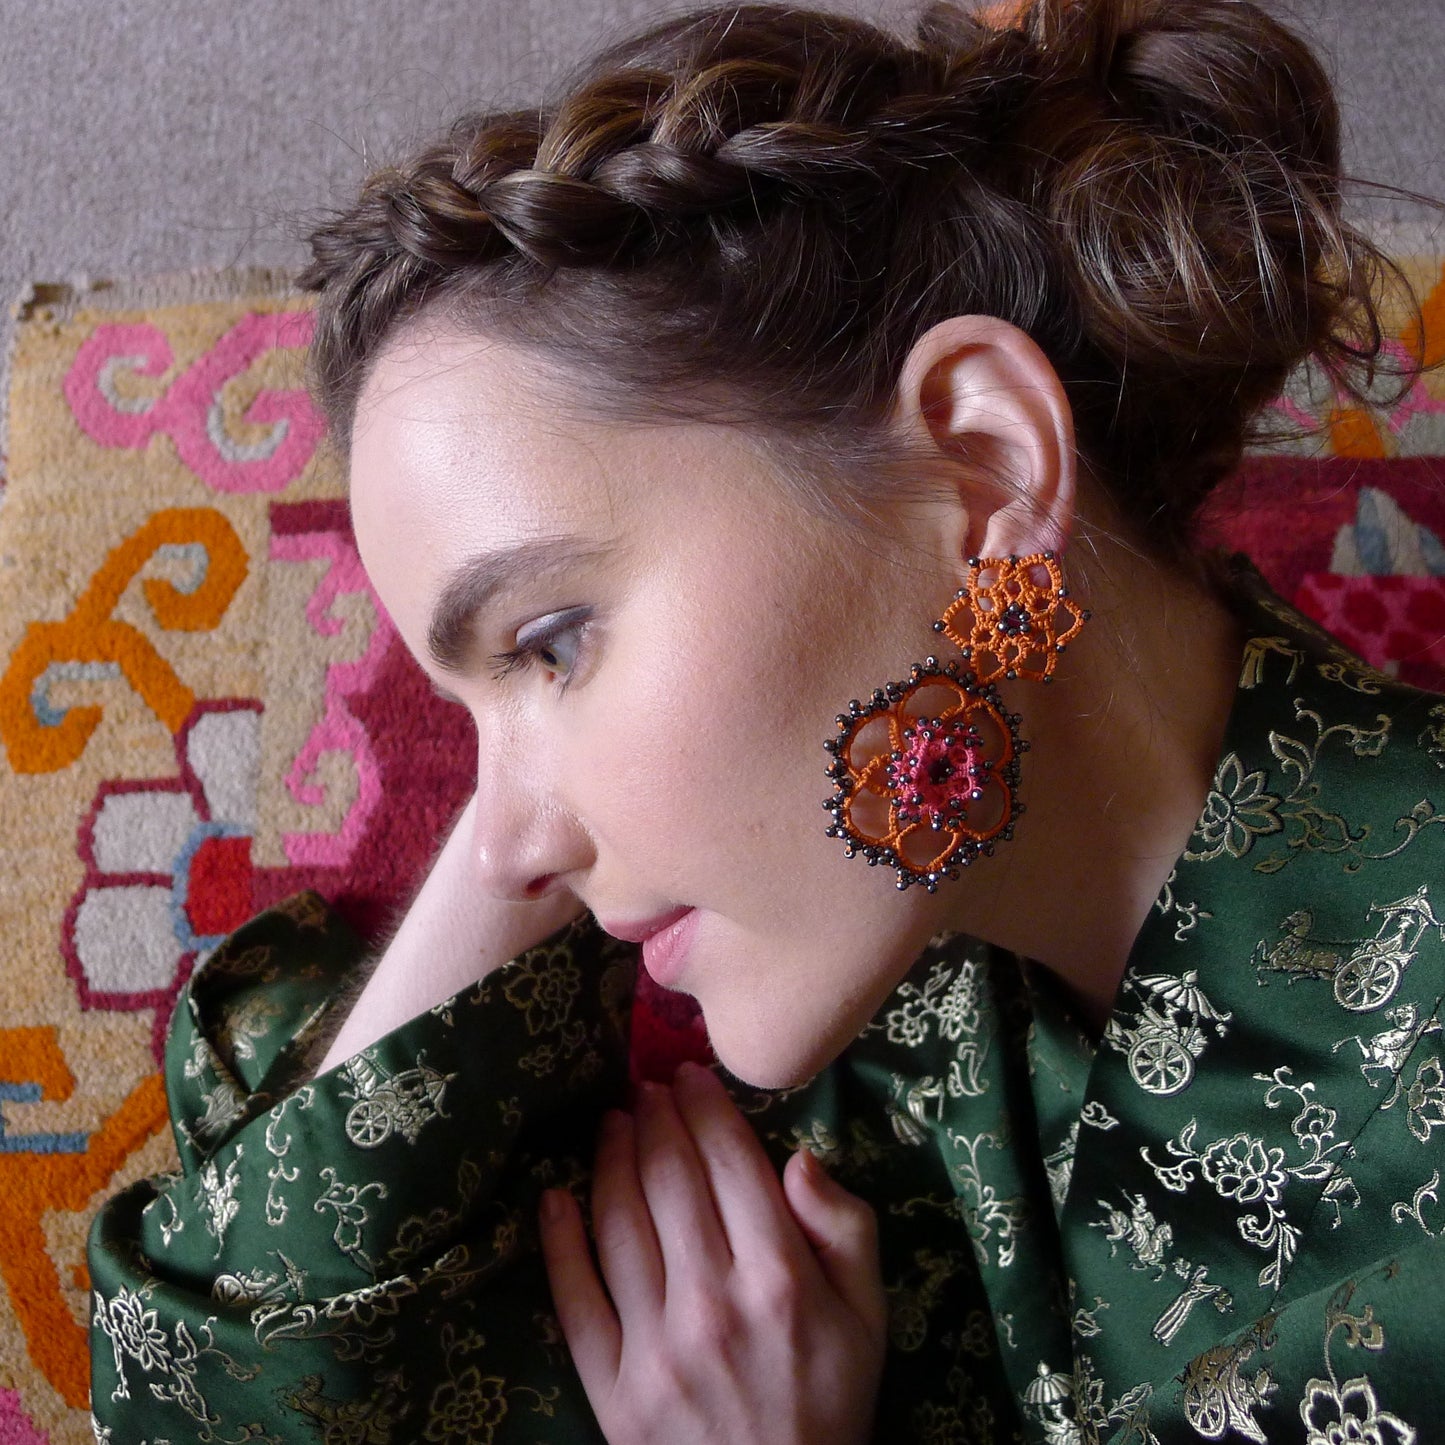 Vintage Bloom bi-tone lace earrings, orange brown bronze